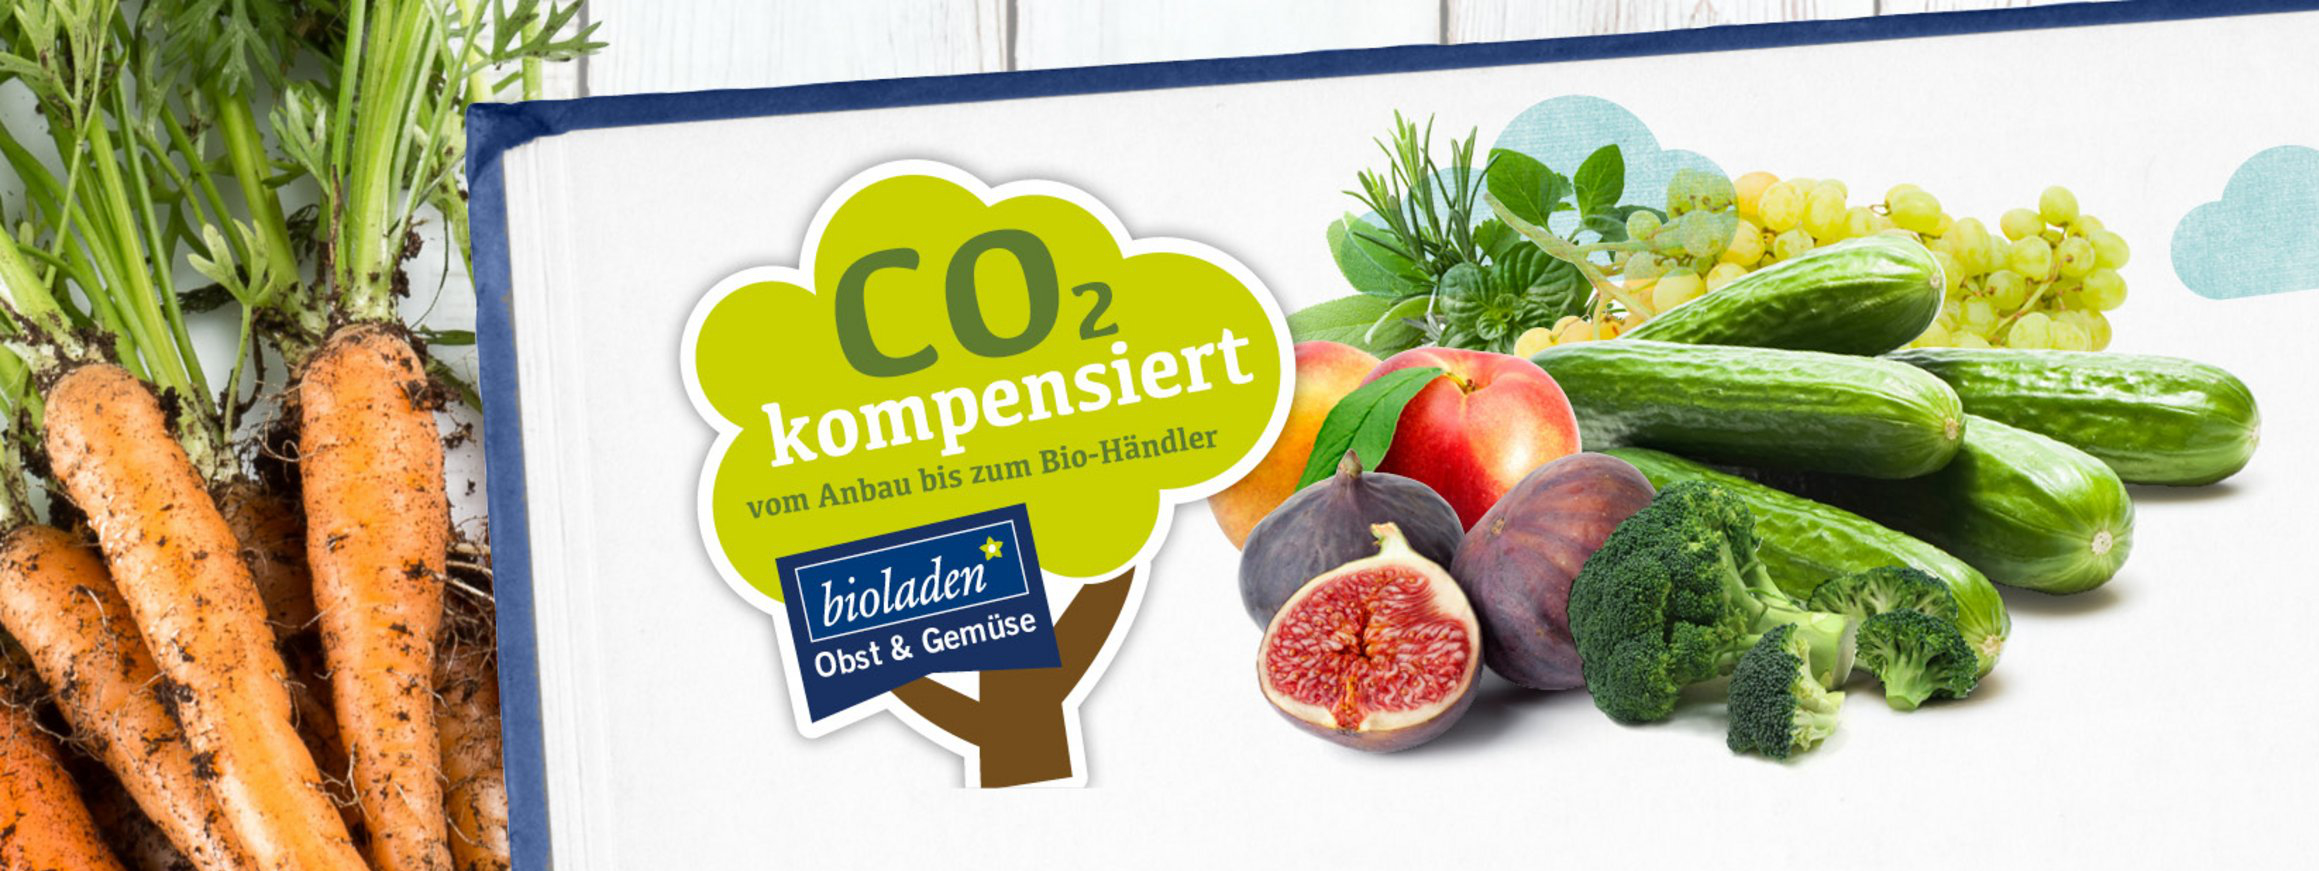 CO2 kompensiertes Obst und Gemüse